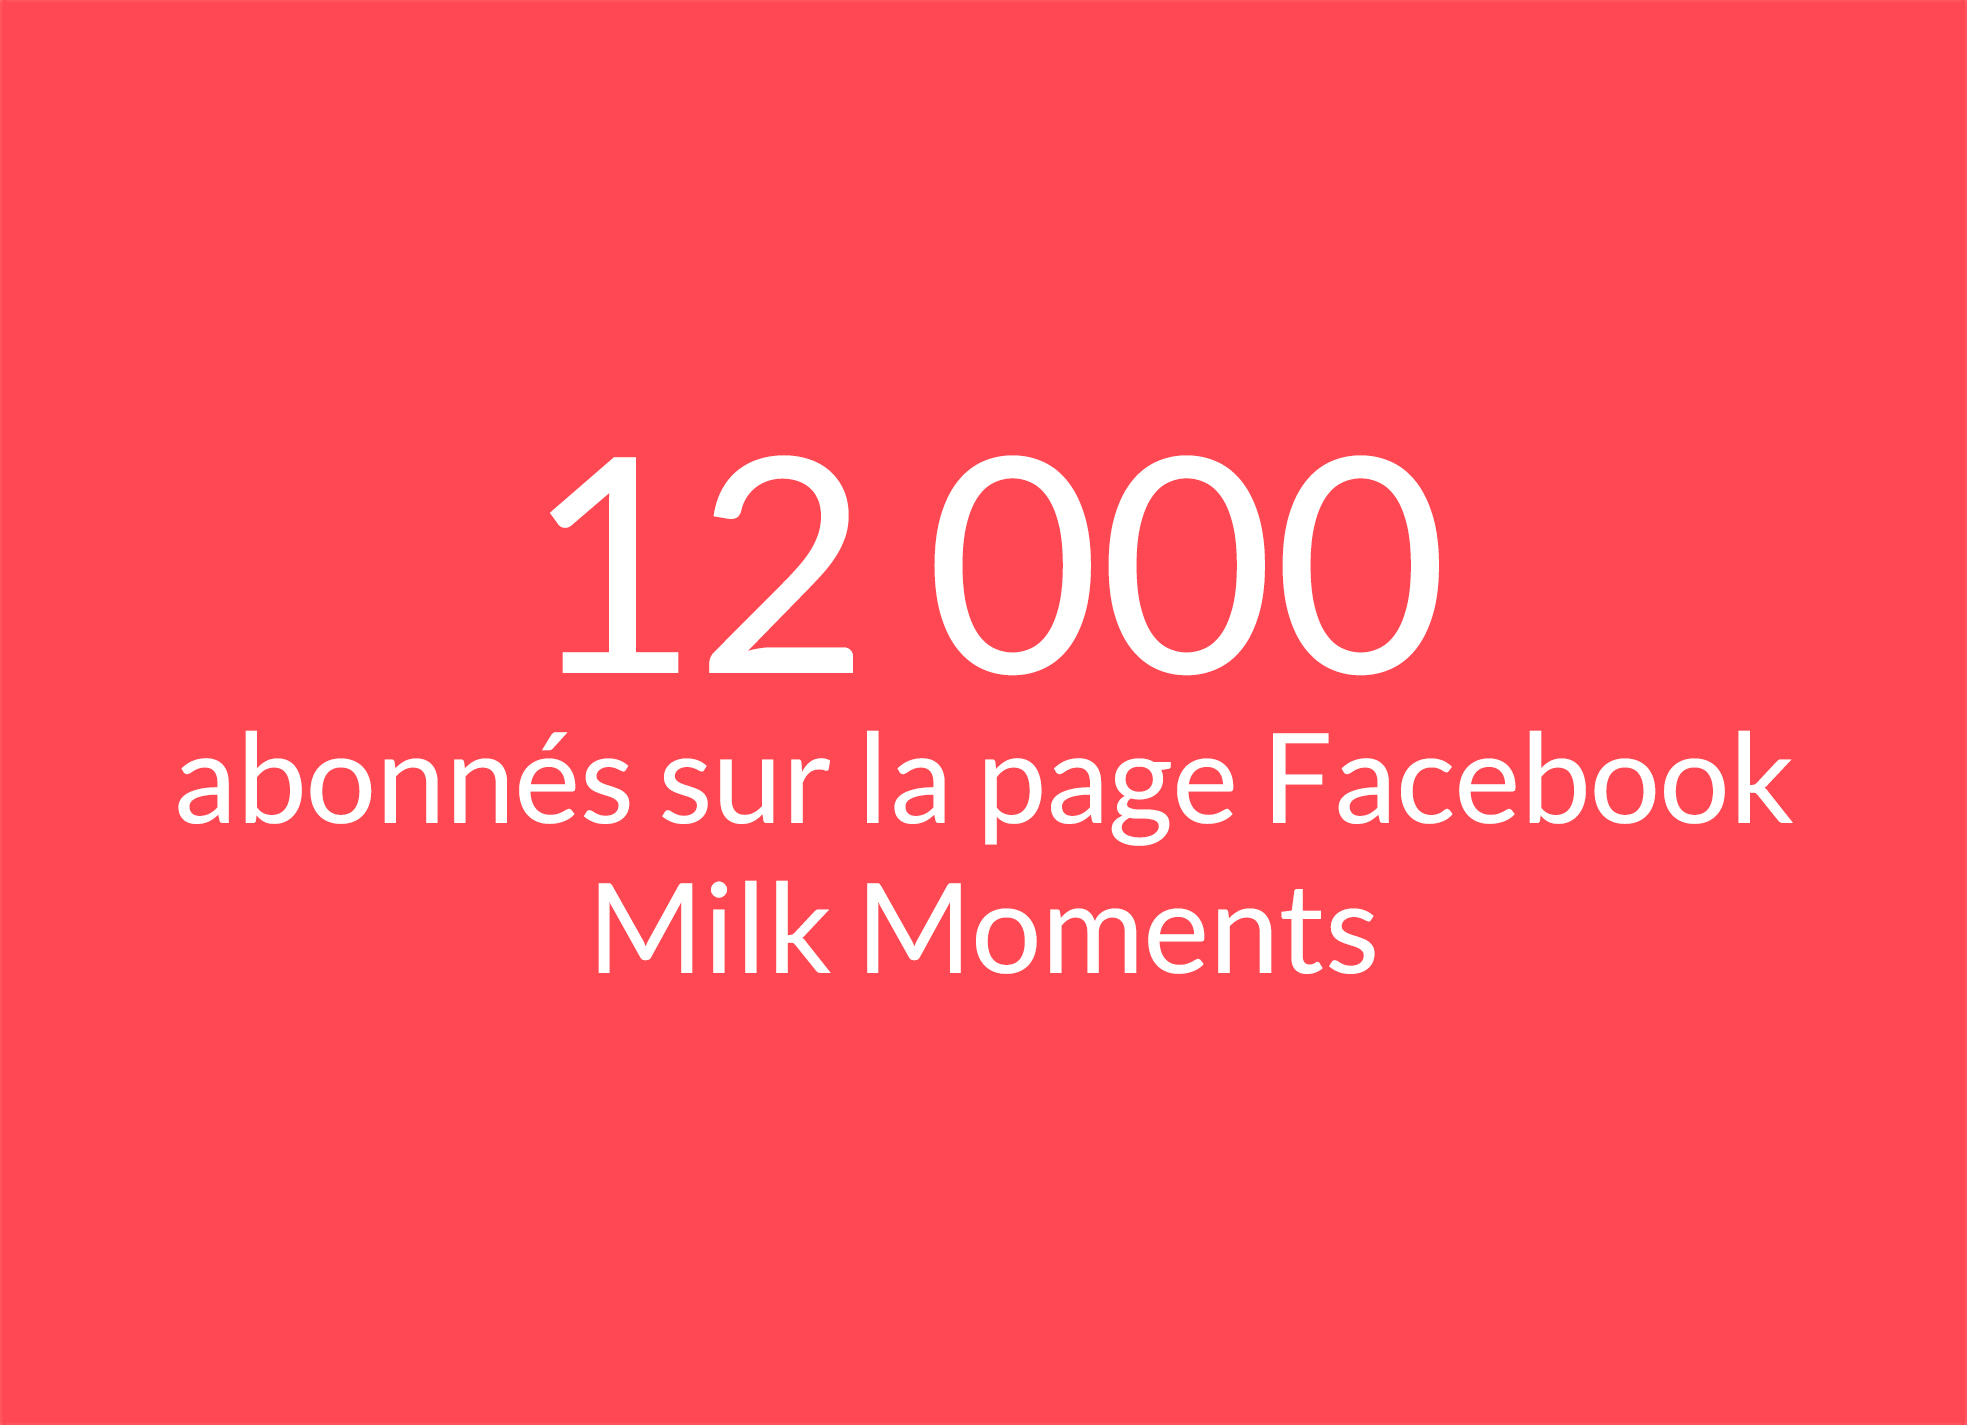 Texte : 12 000 abonnés sur la page Facebook Milk Moments 